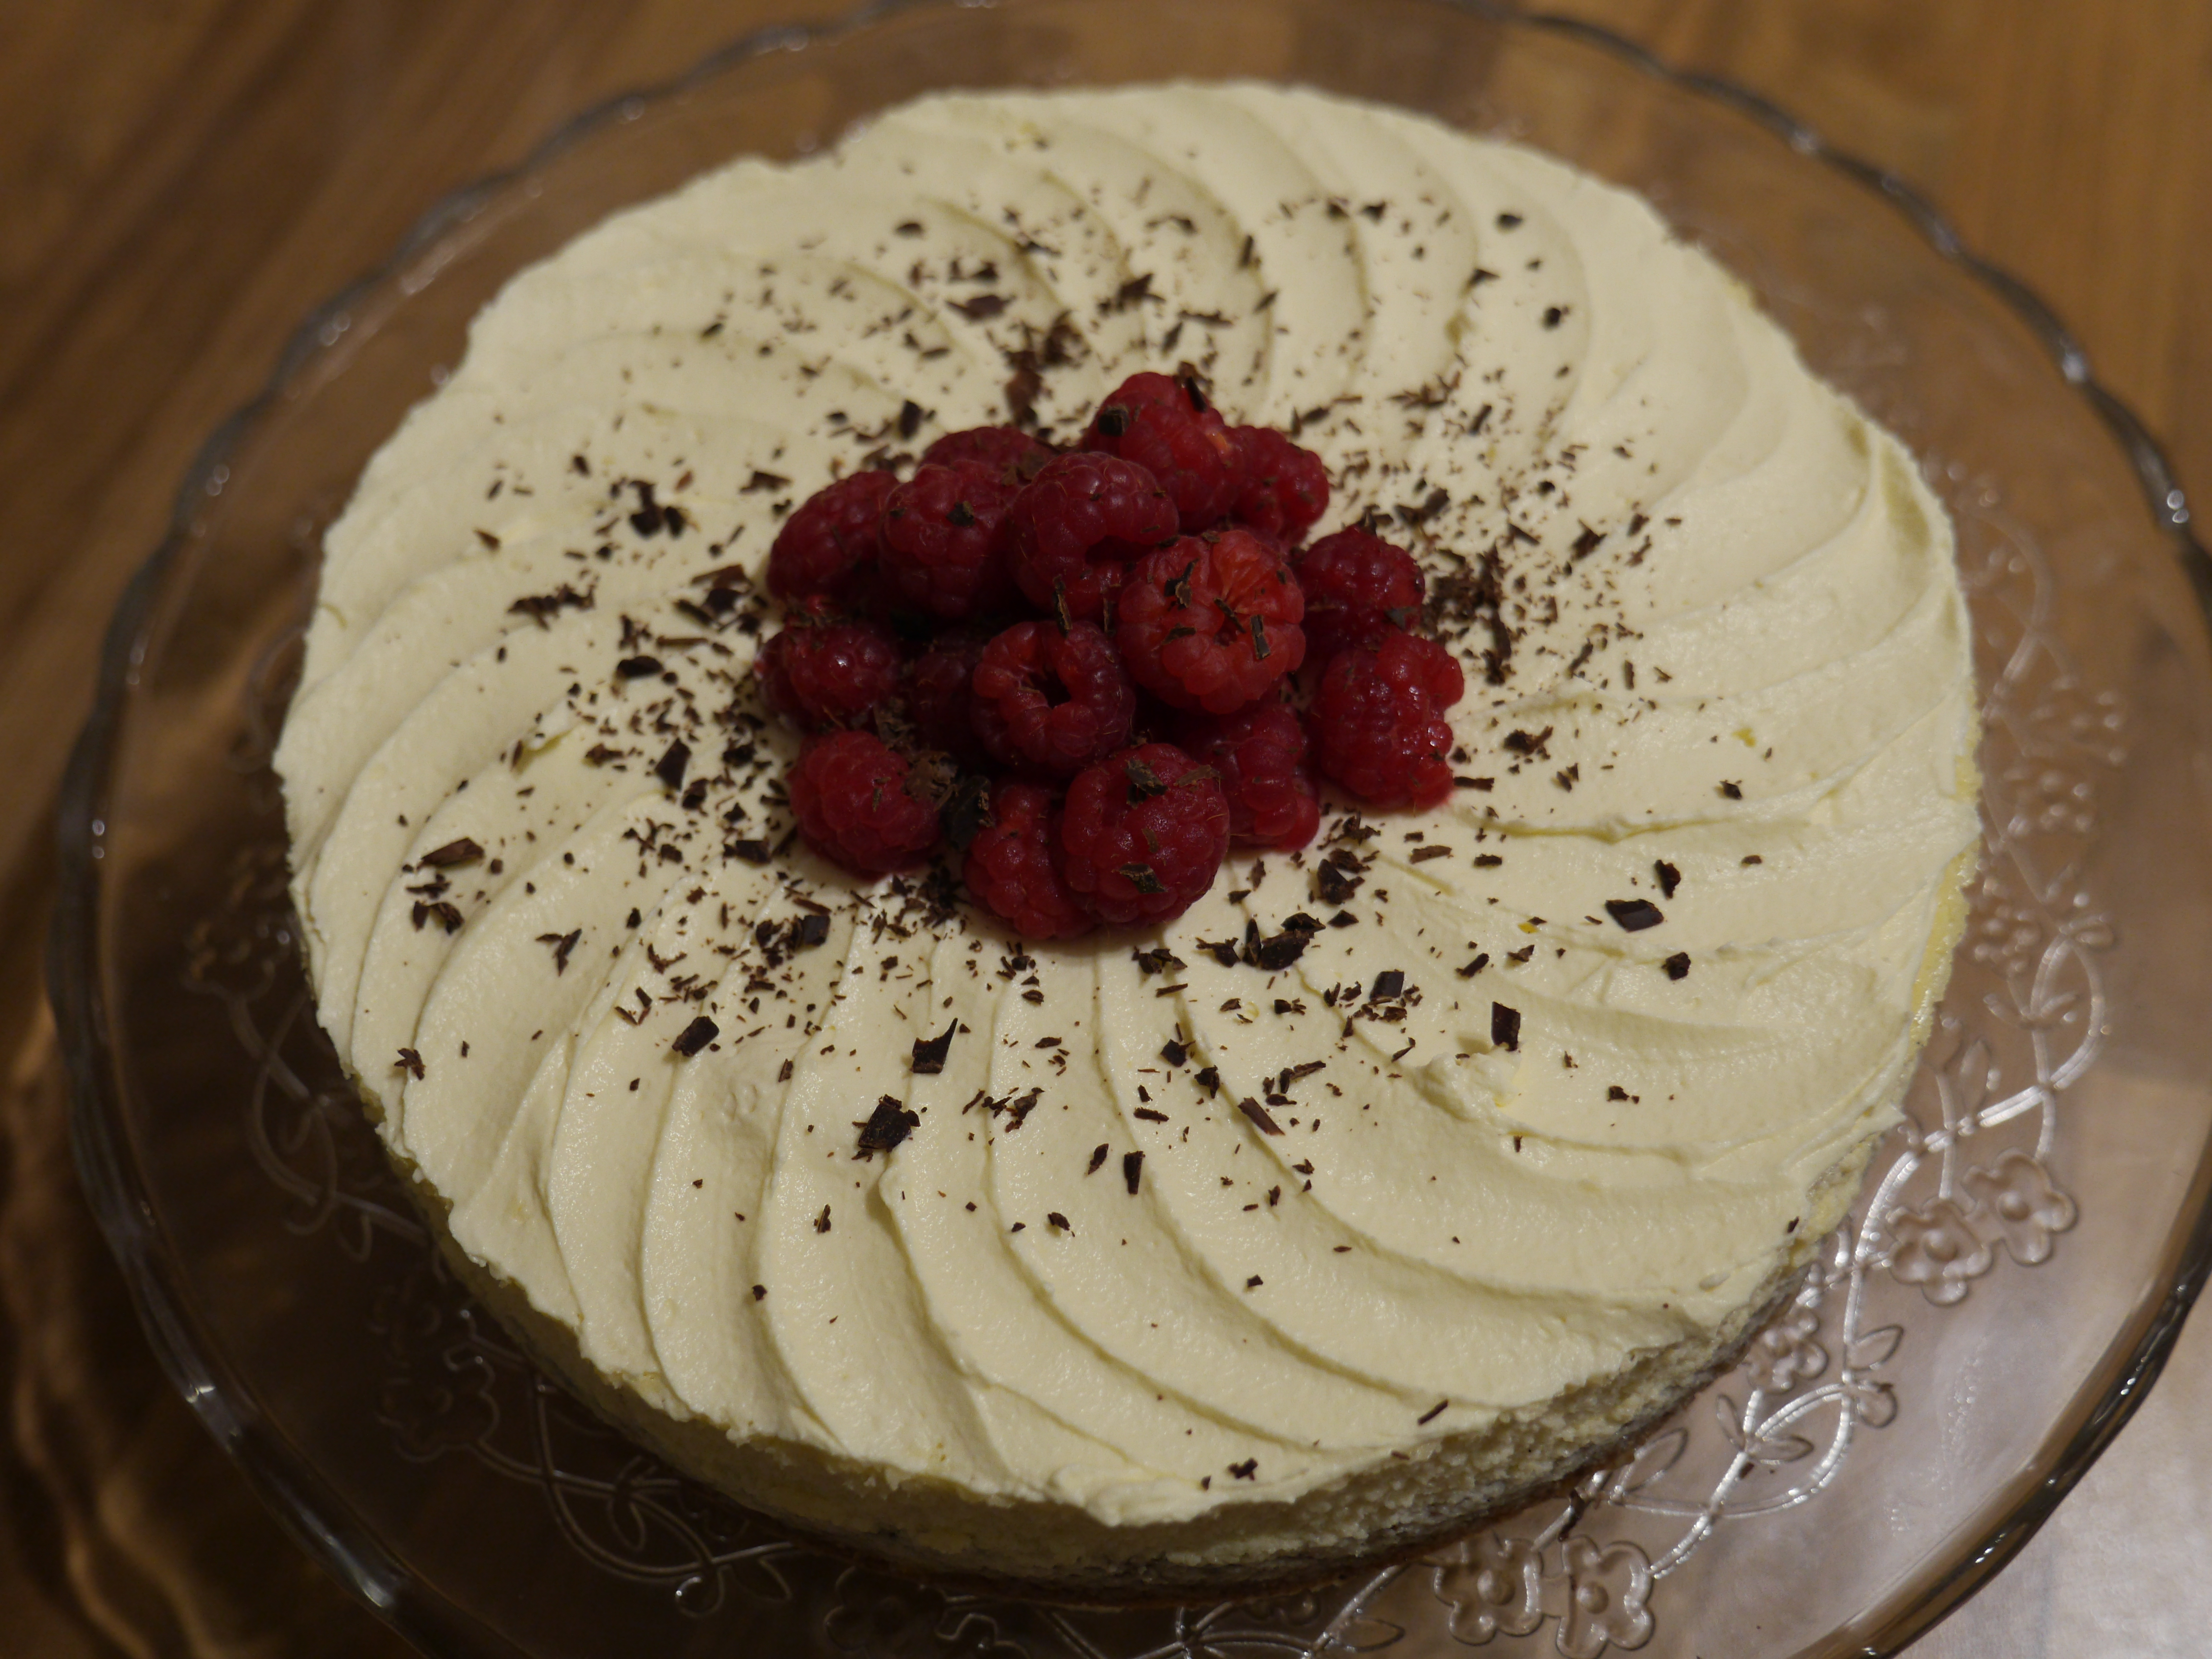 Raspberry & Hazelnut Cheesecake (Low-carb, gluten-free)